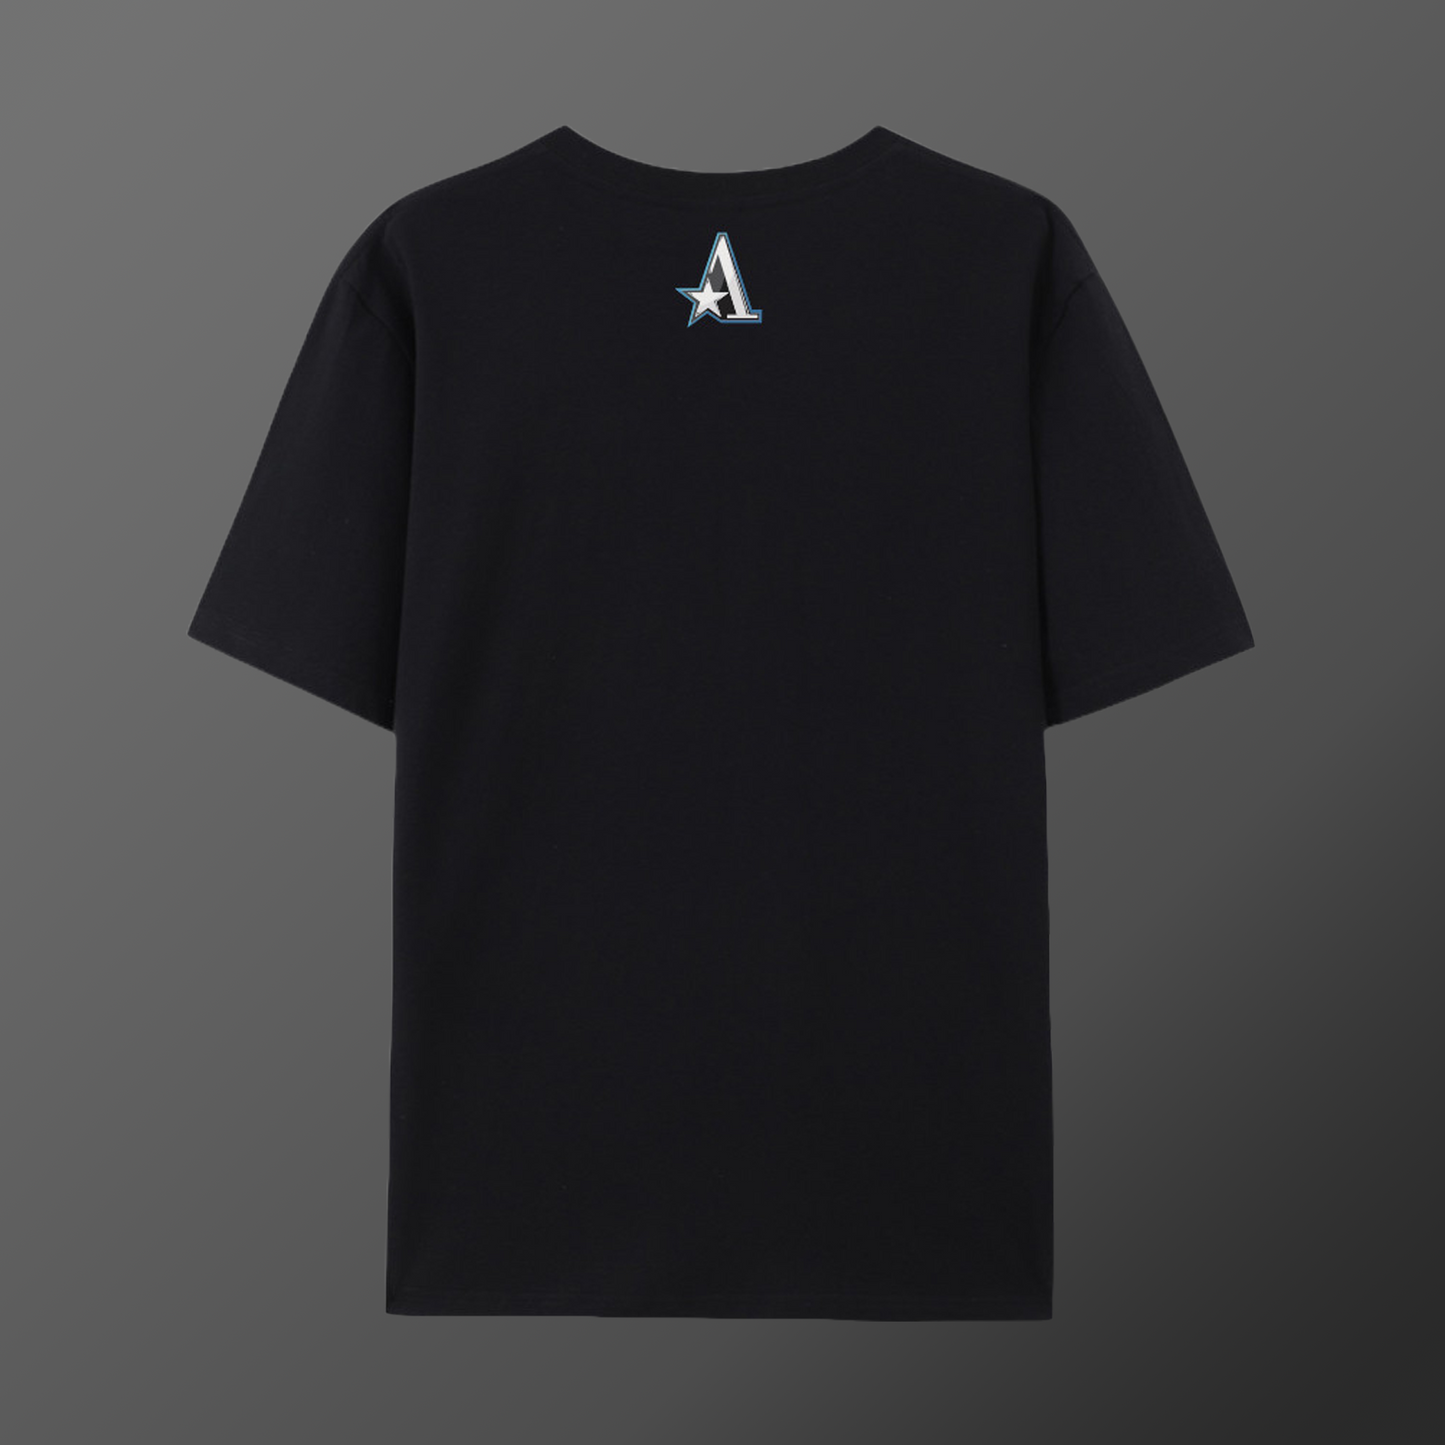 Team Aster T-Shirt